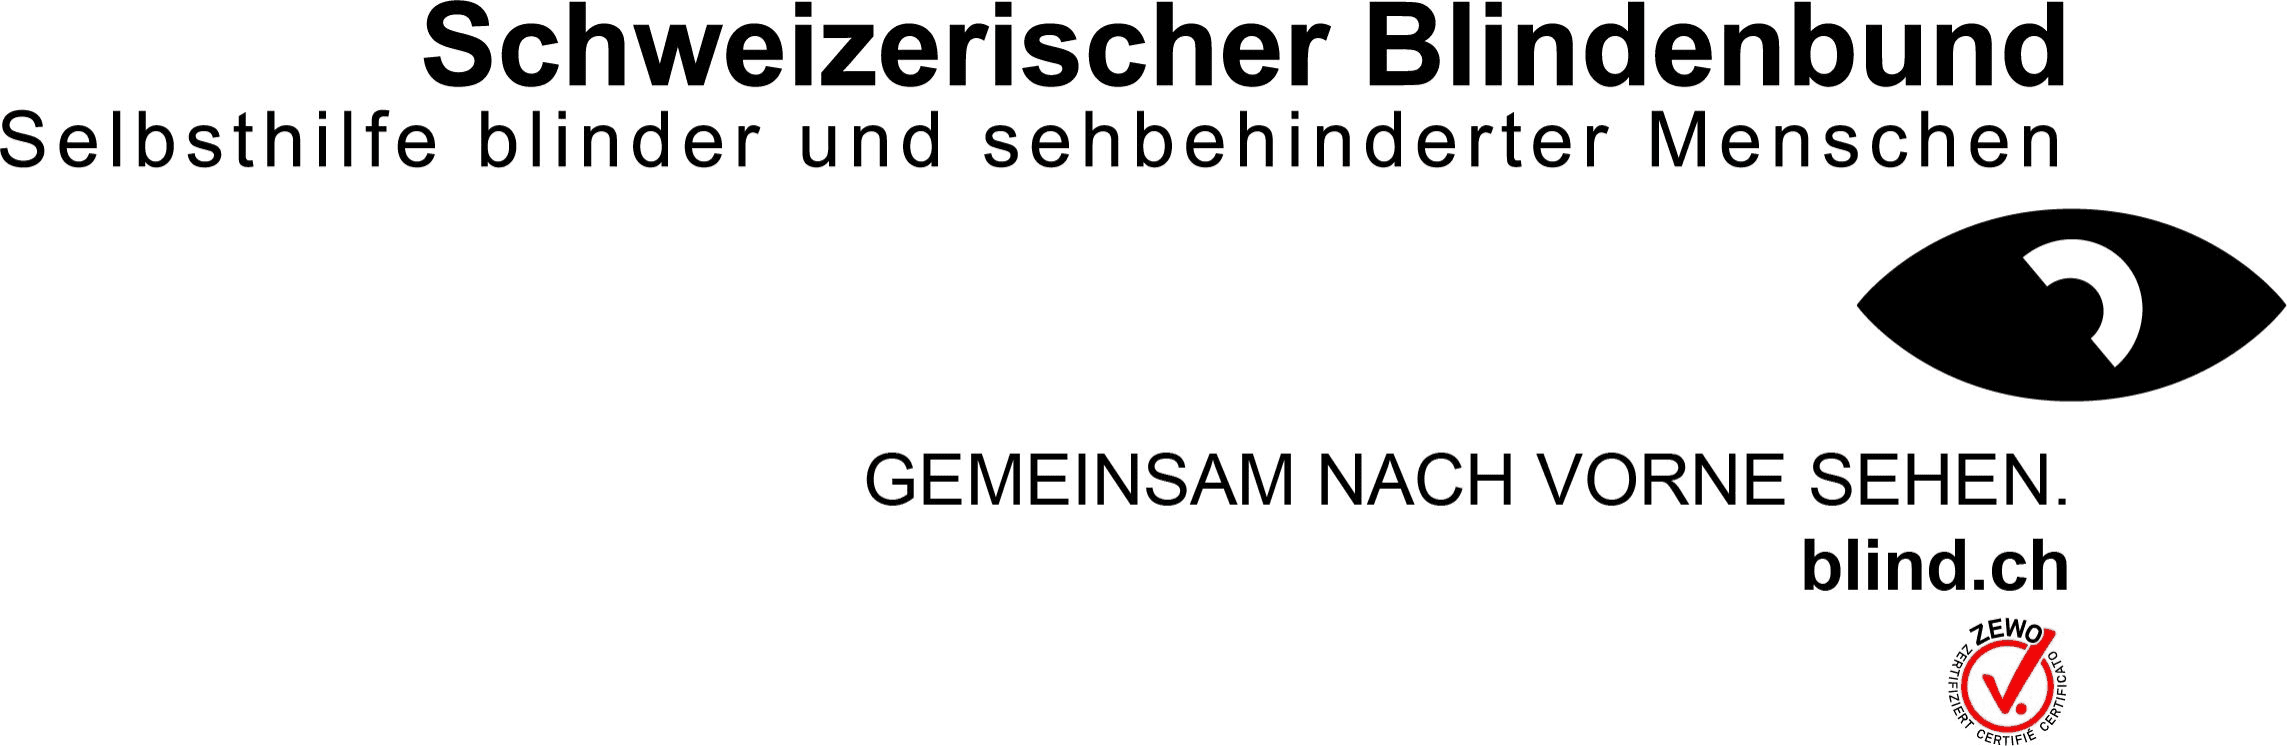 Schweizerischer Blindenbund